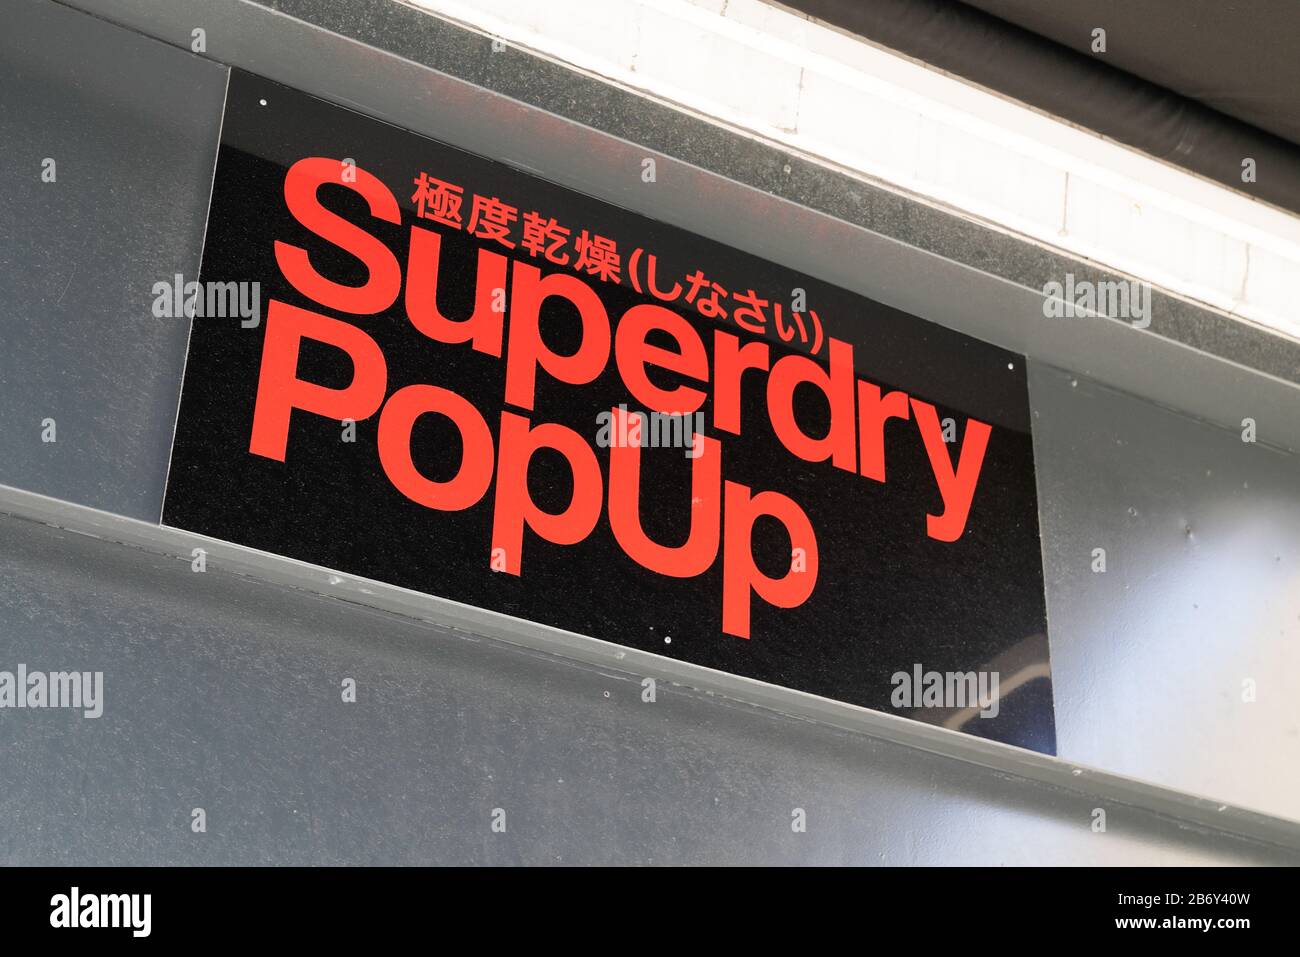 Bordeaux , Aquitaine / France - 02 15 2020 : Superdry popup store